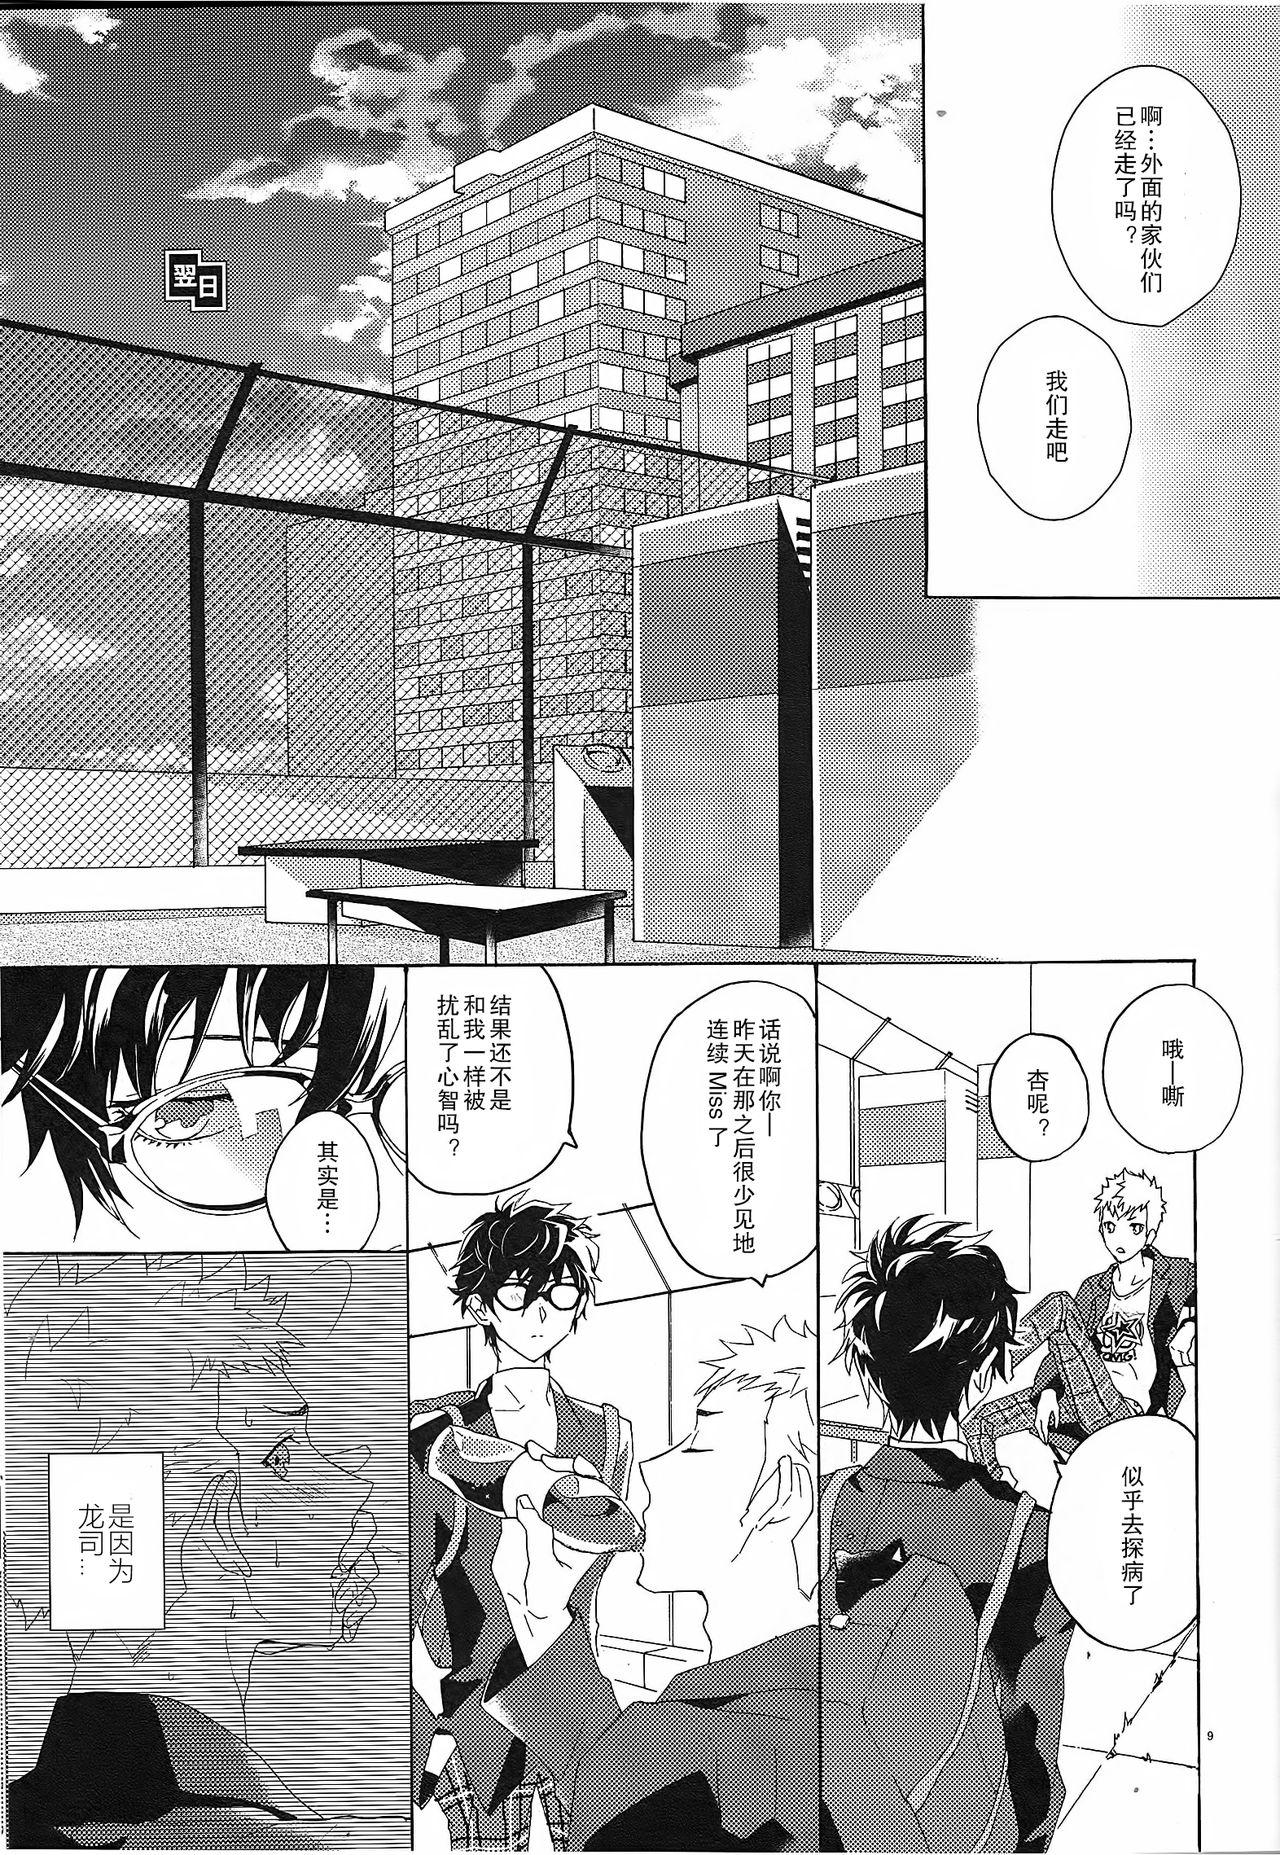 Retro Migite no Kimochi | 右手的触感 - Persona 5 Gay Dudes - Page 11